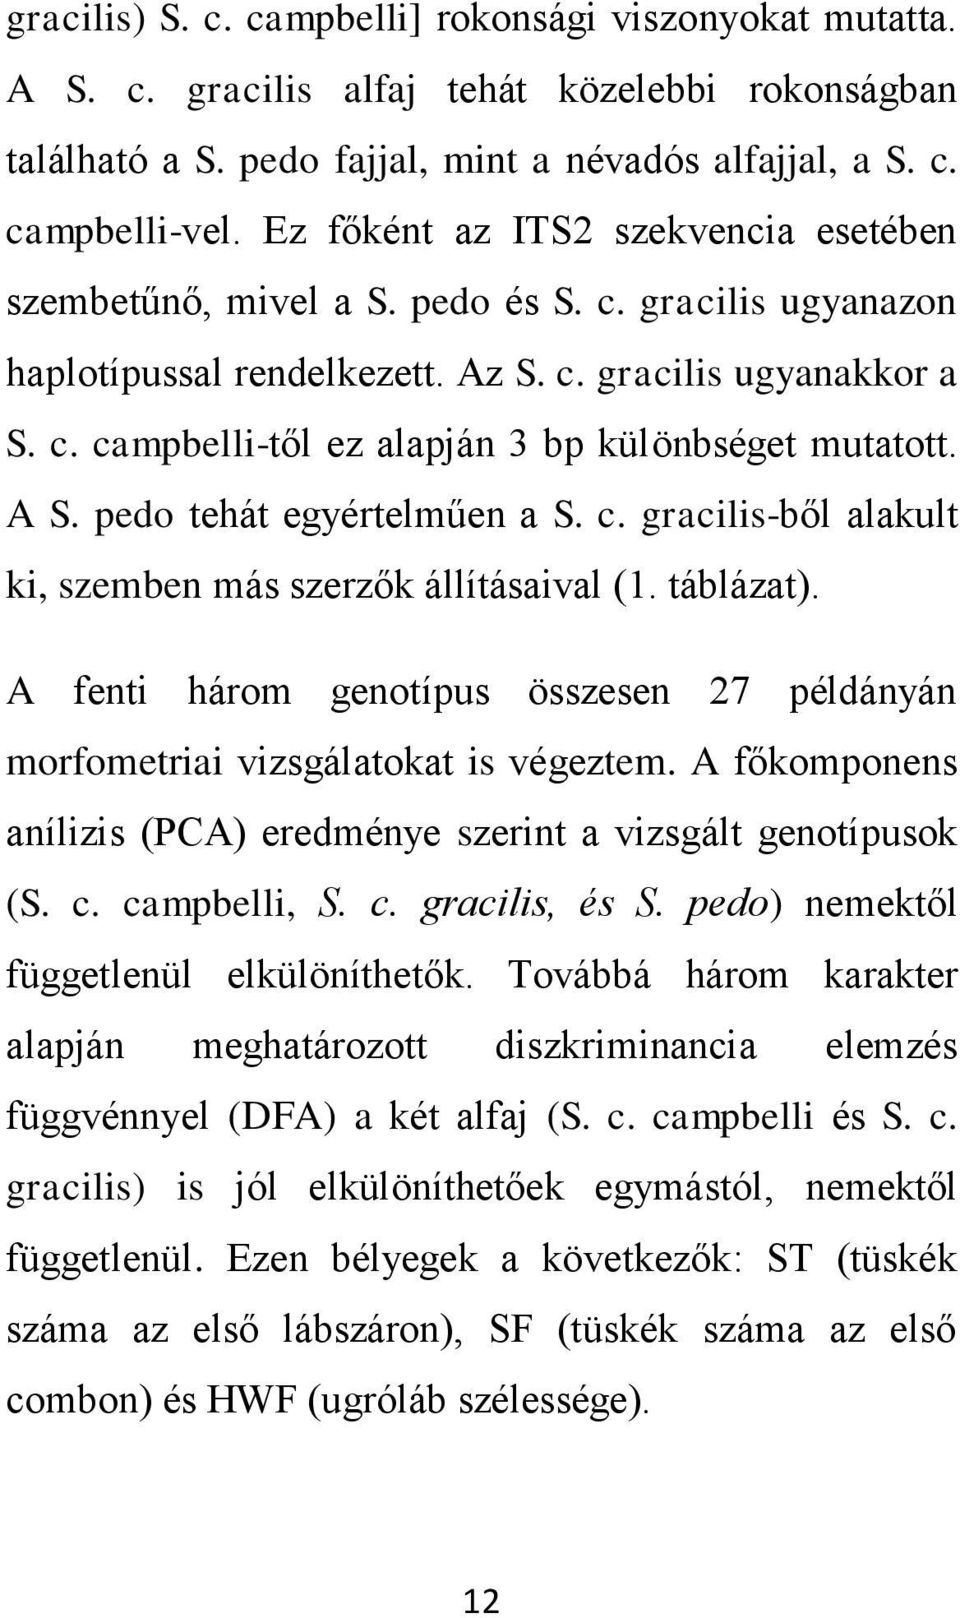 A S. pedo tehát egyértelműen a S. c. gracilis-ből alakult ki, szemben más szerzők állításaival (1. táblázat). A fenti három genotípus összesen 27 példányán morfometriai vizsgálatokat is végeztem.